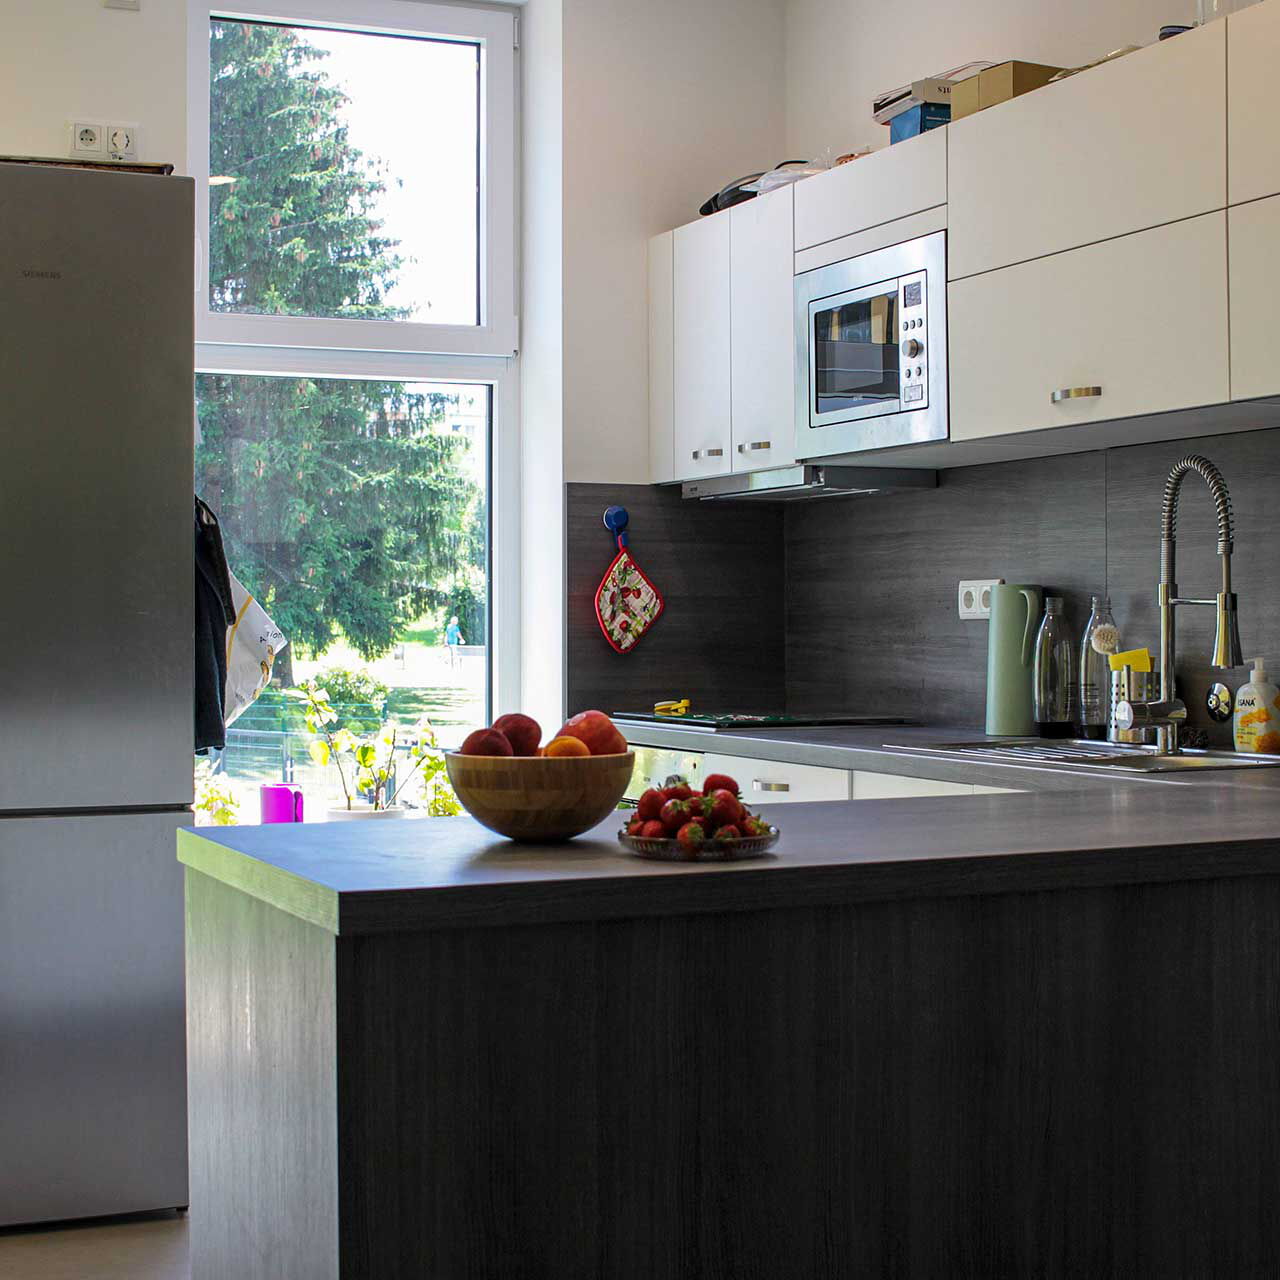 Eine kleine graue Einbauküche mit Mikrowelle, Spüle, Herd und großen Edelstahlkühlschrank.